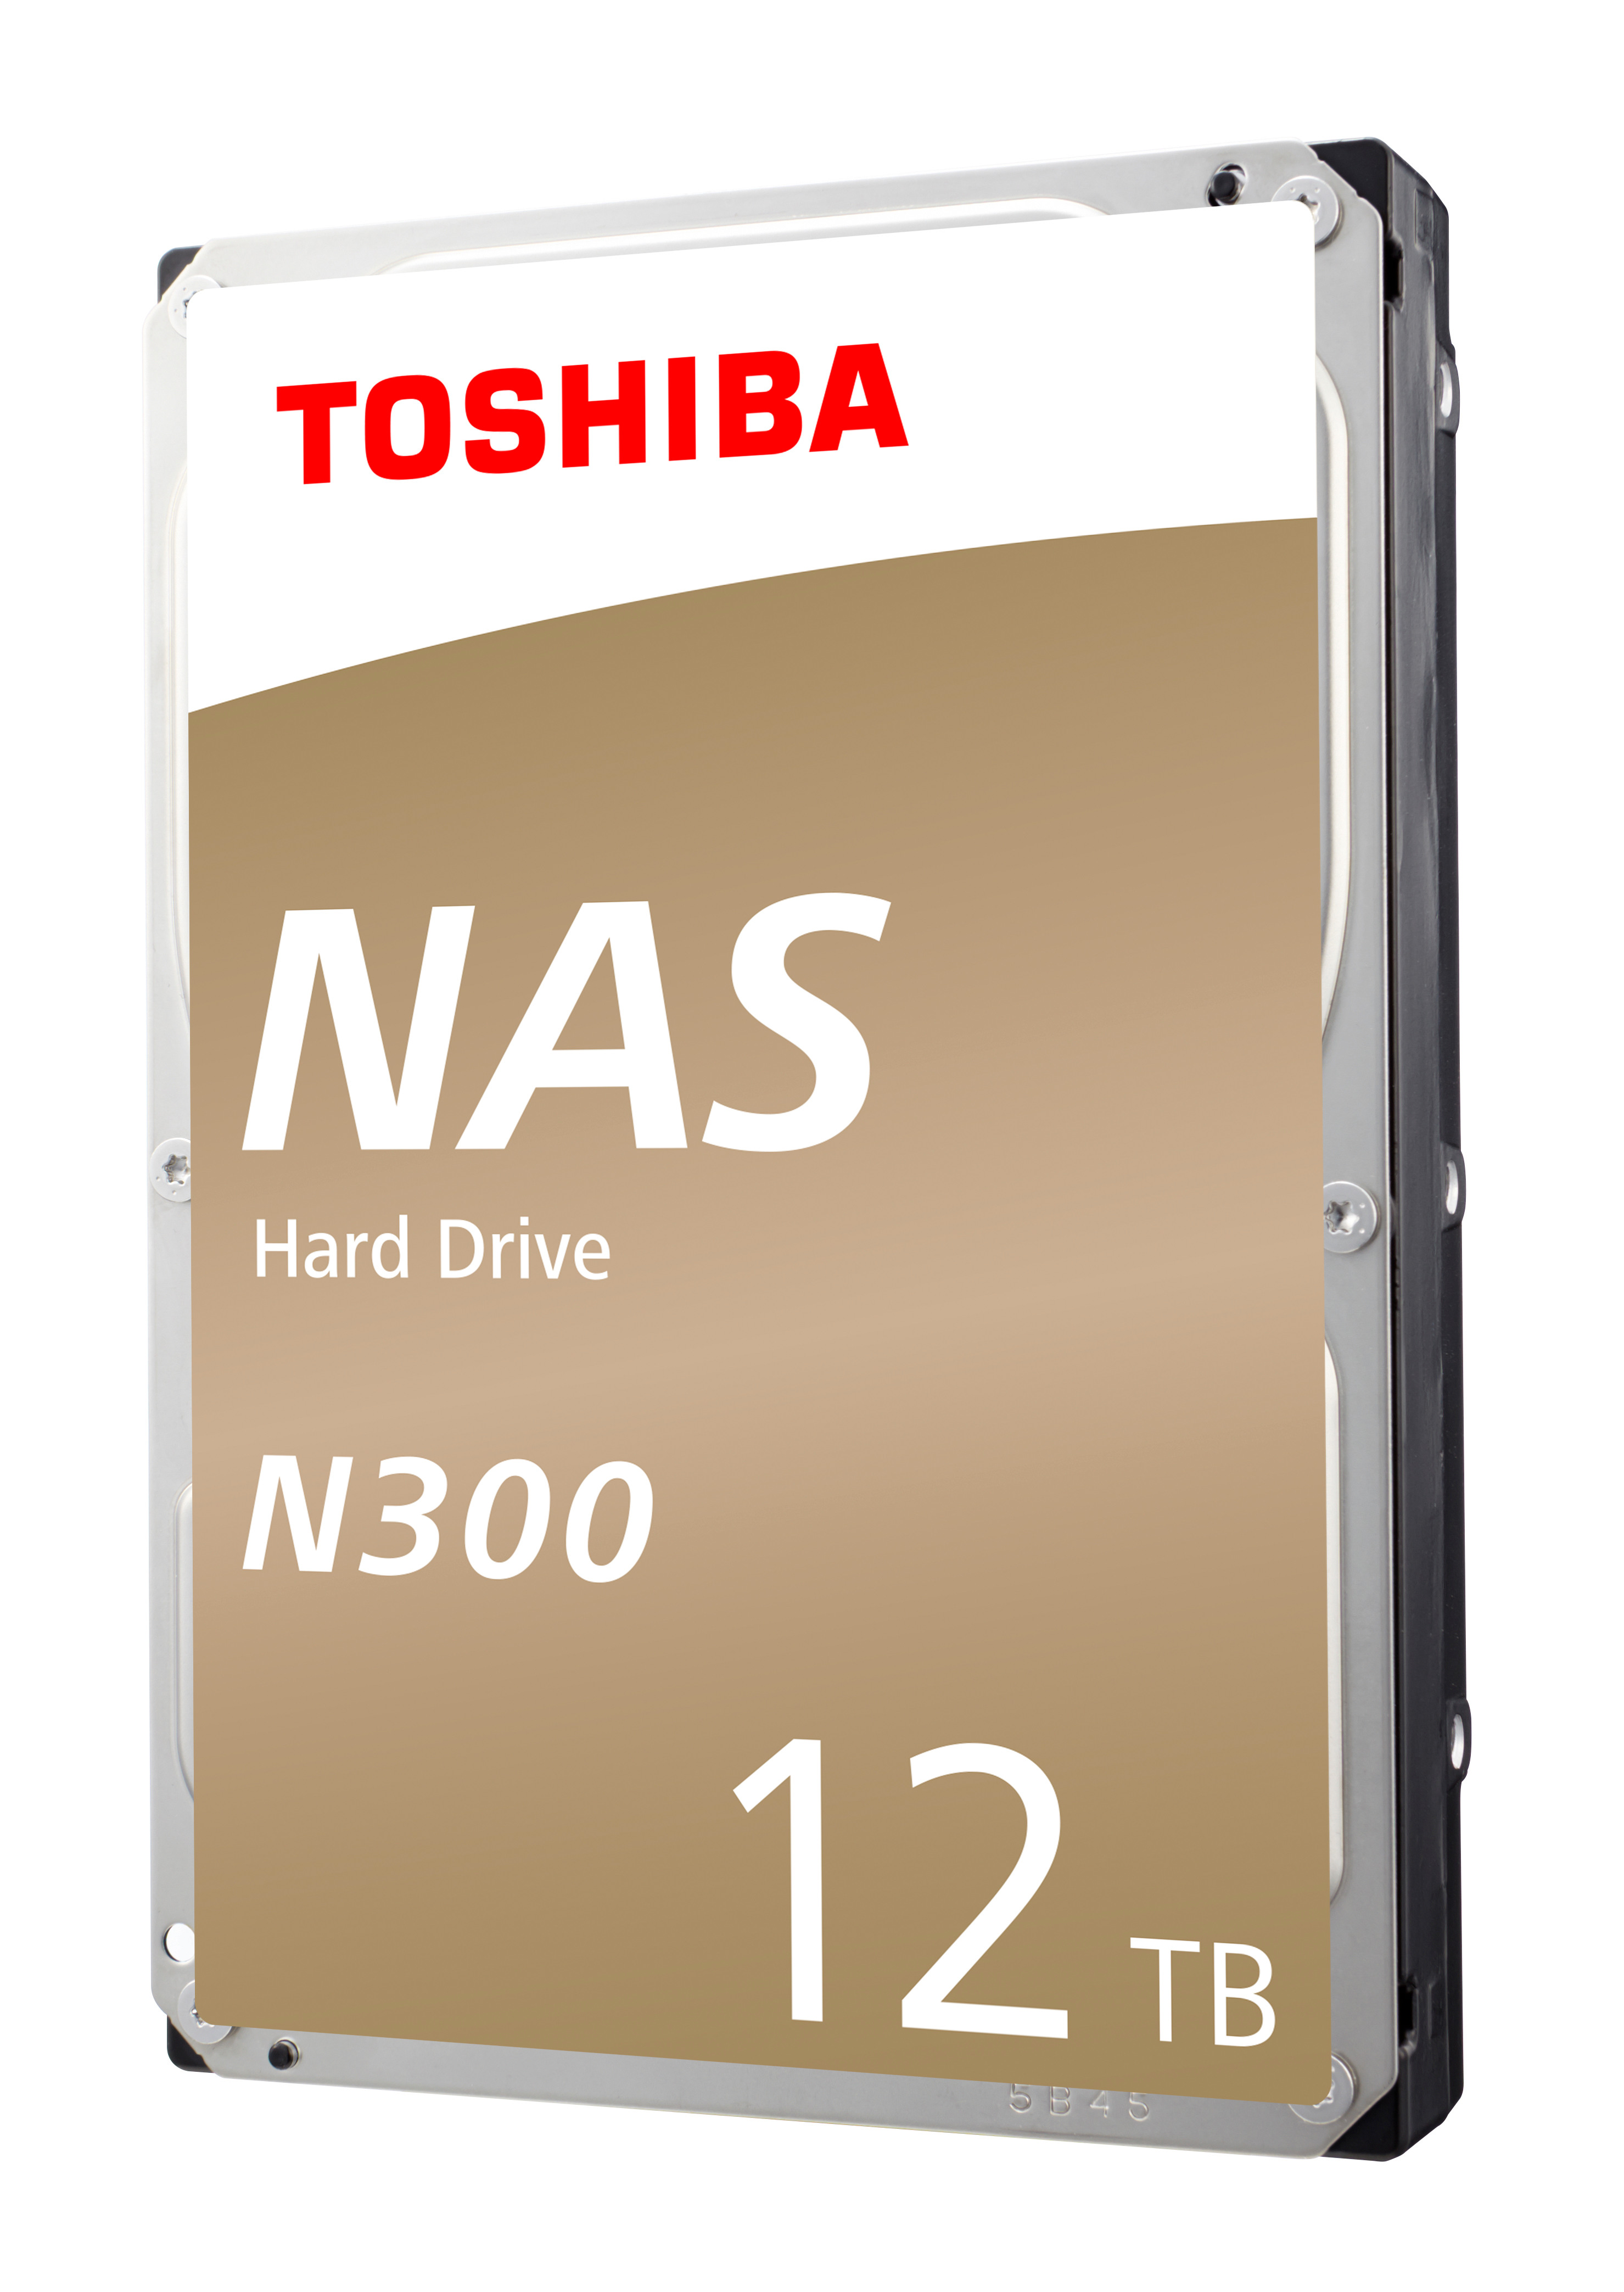 TOSHIBA HDD N300 NAS 12TB HDWG21CEZSTA internal, SATA 3.5 inch